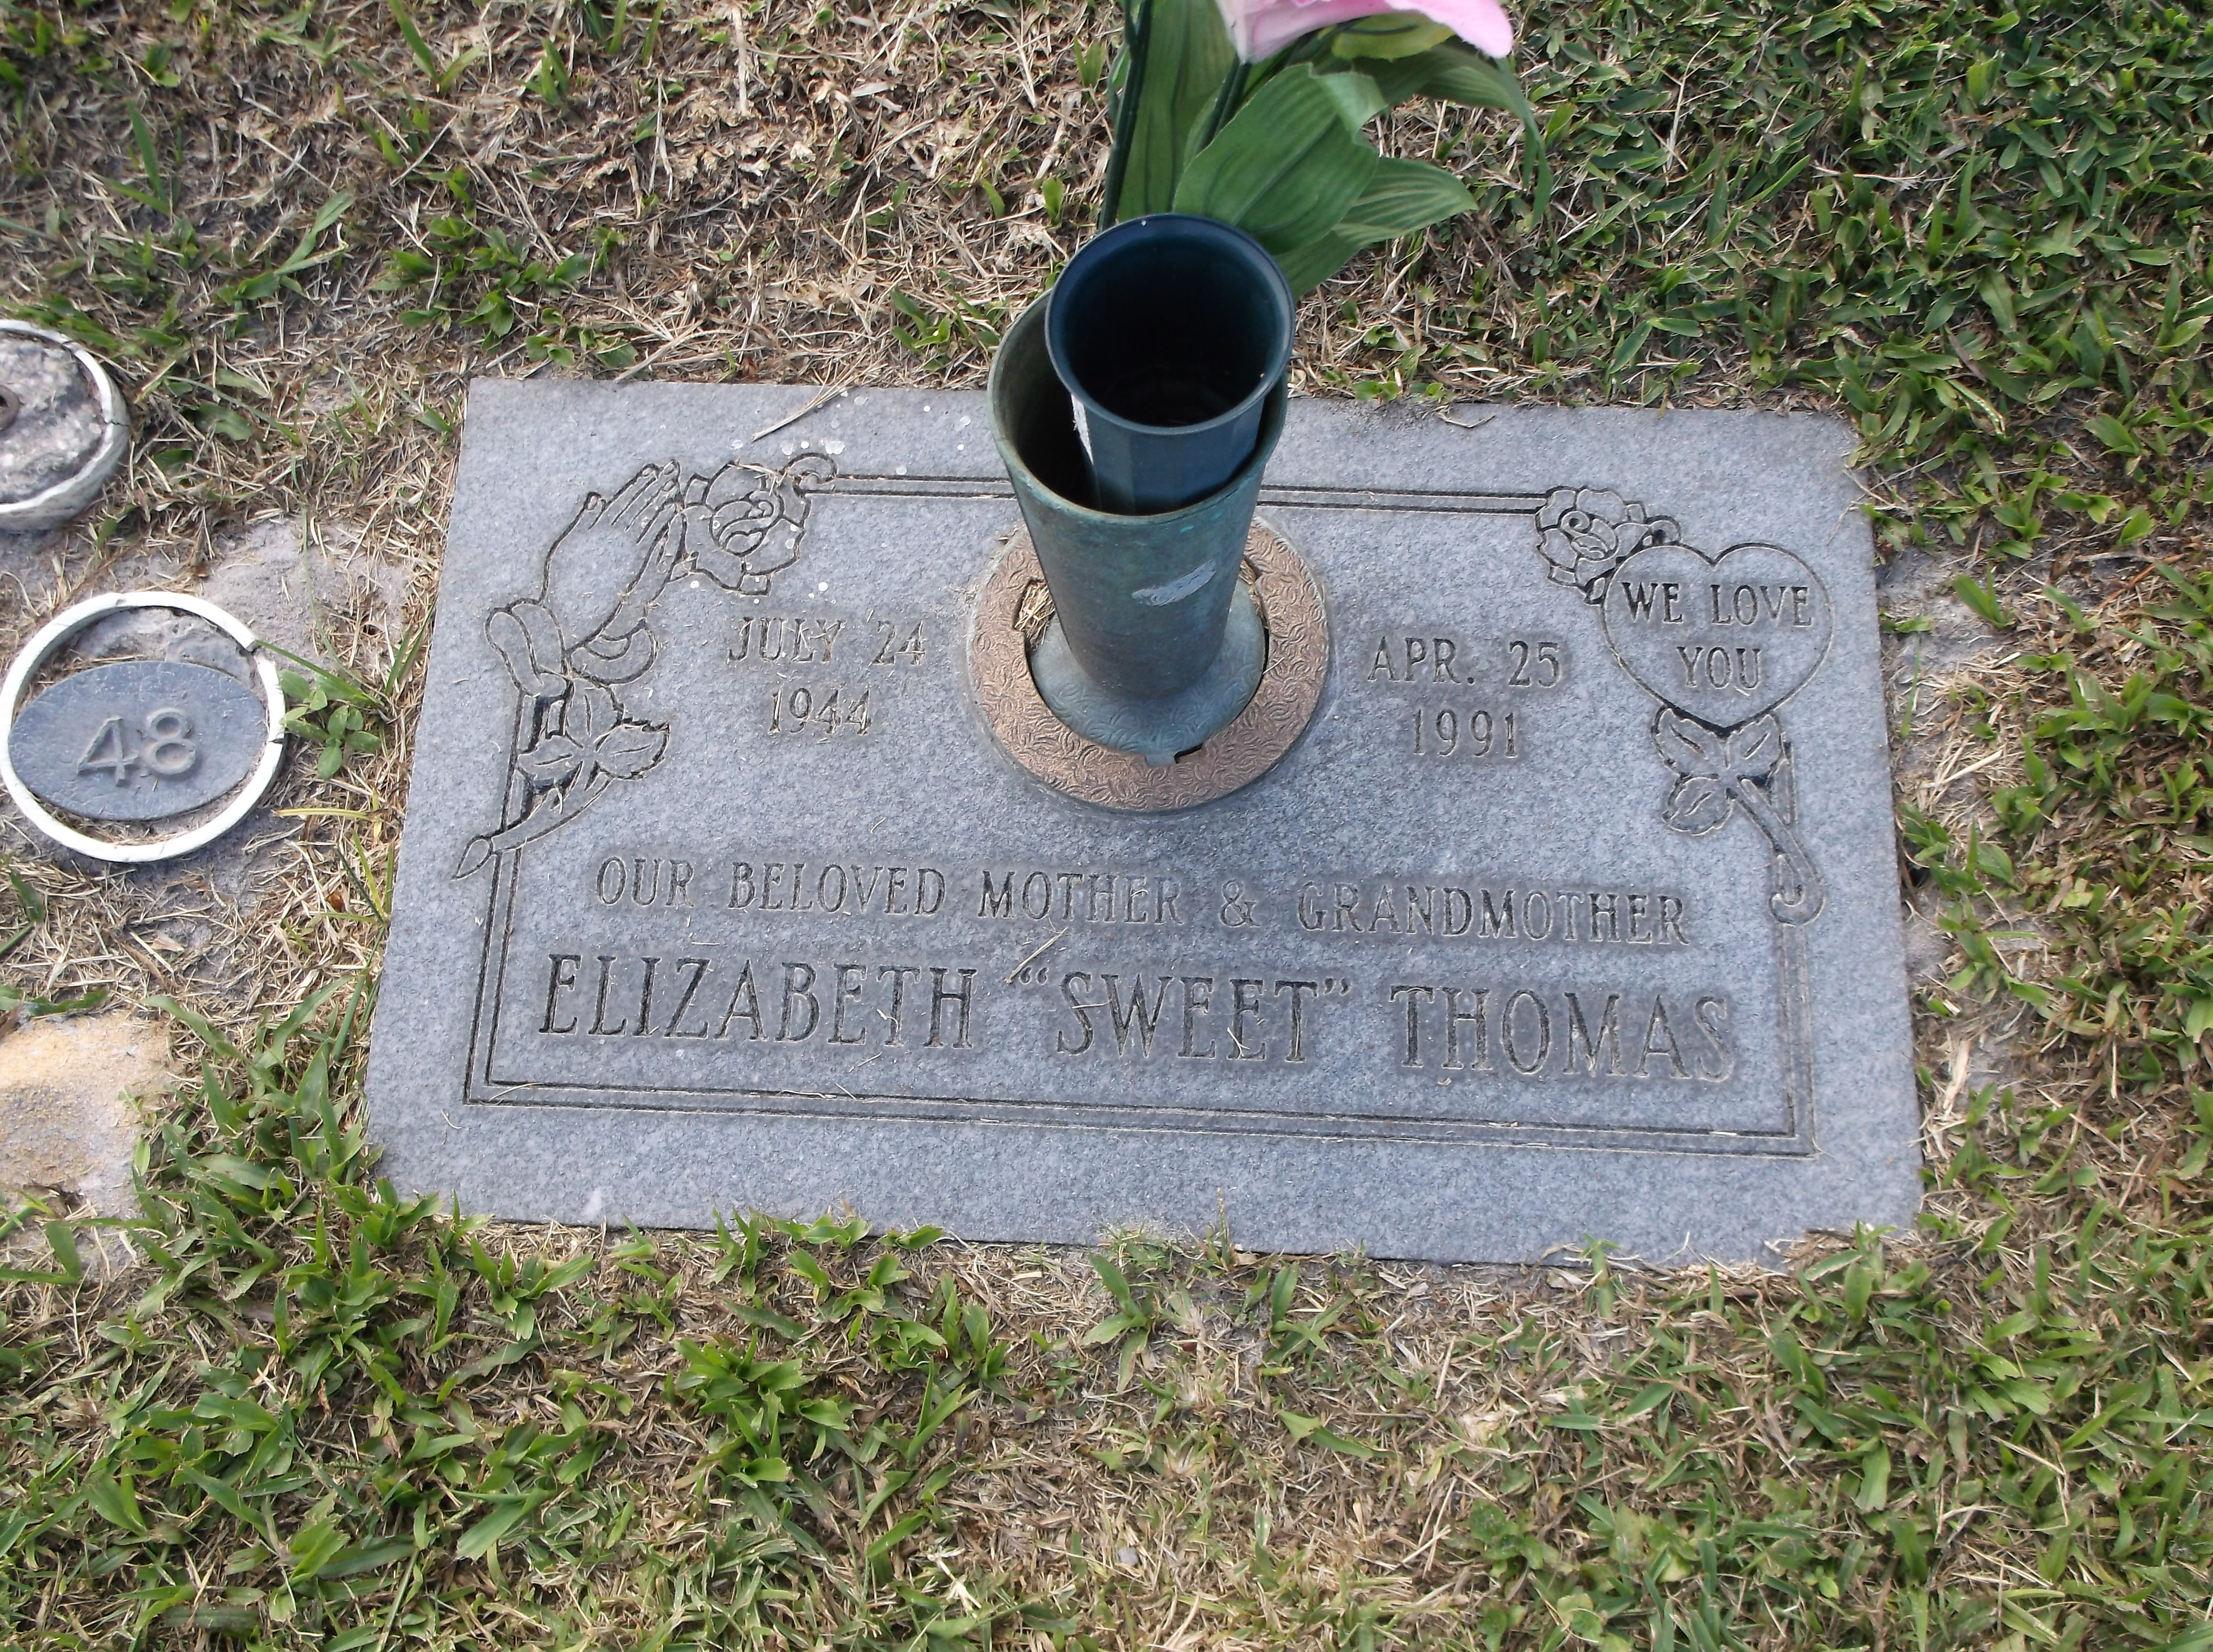 Elizabeth "Sweet" Thomas